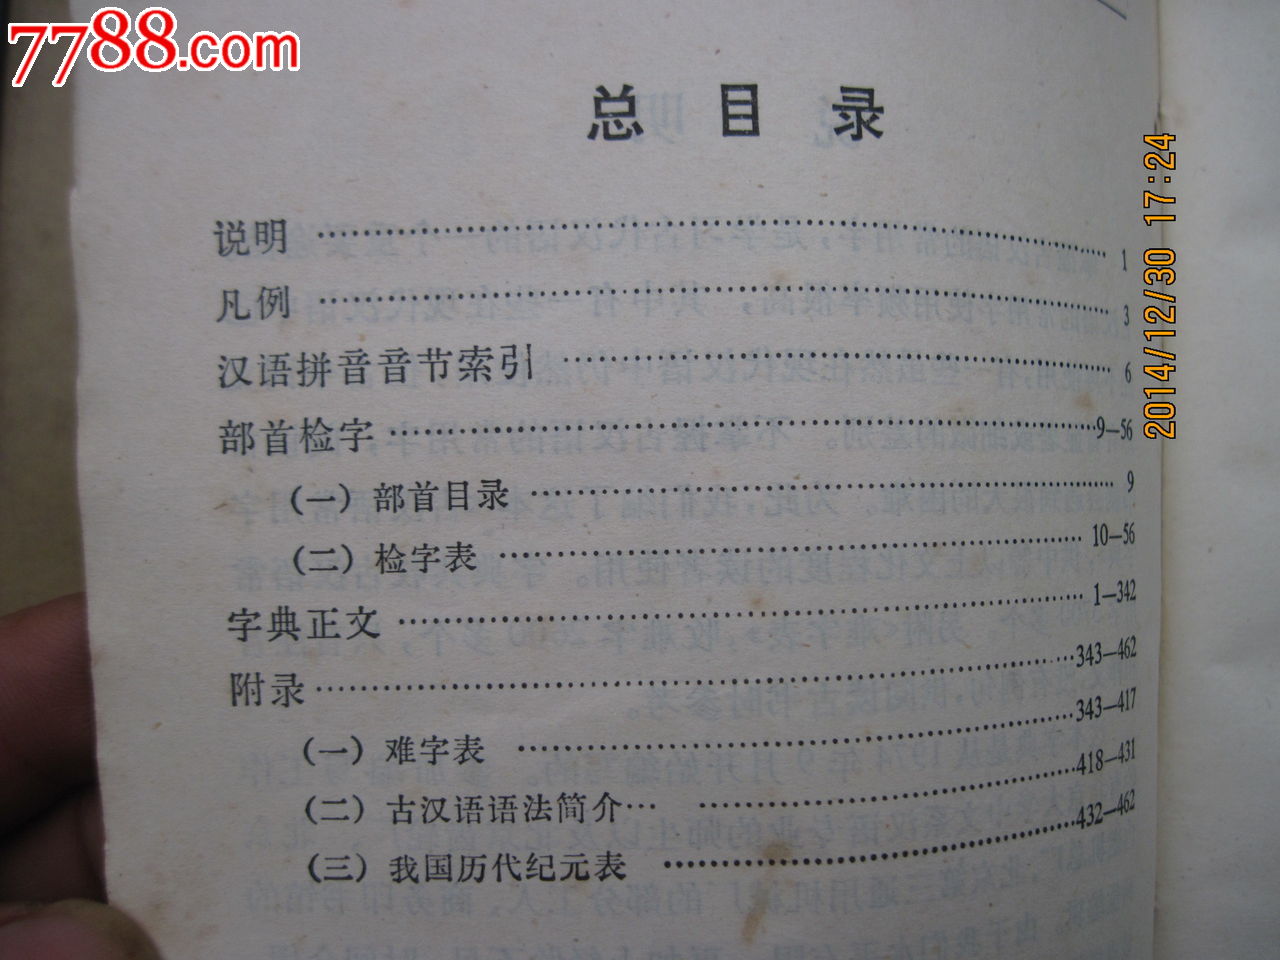 古汉语常用字字典-价格:6元-se27850696-字典